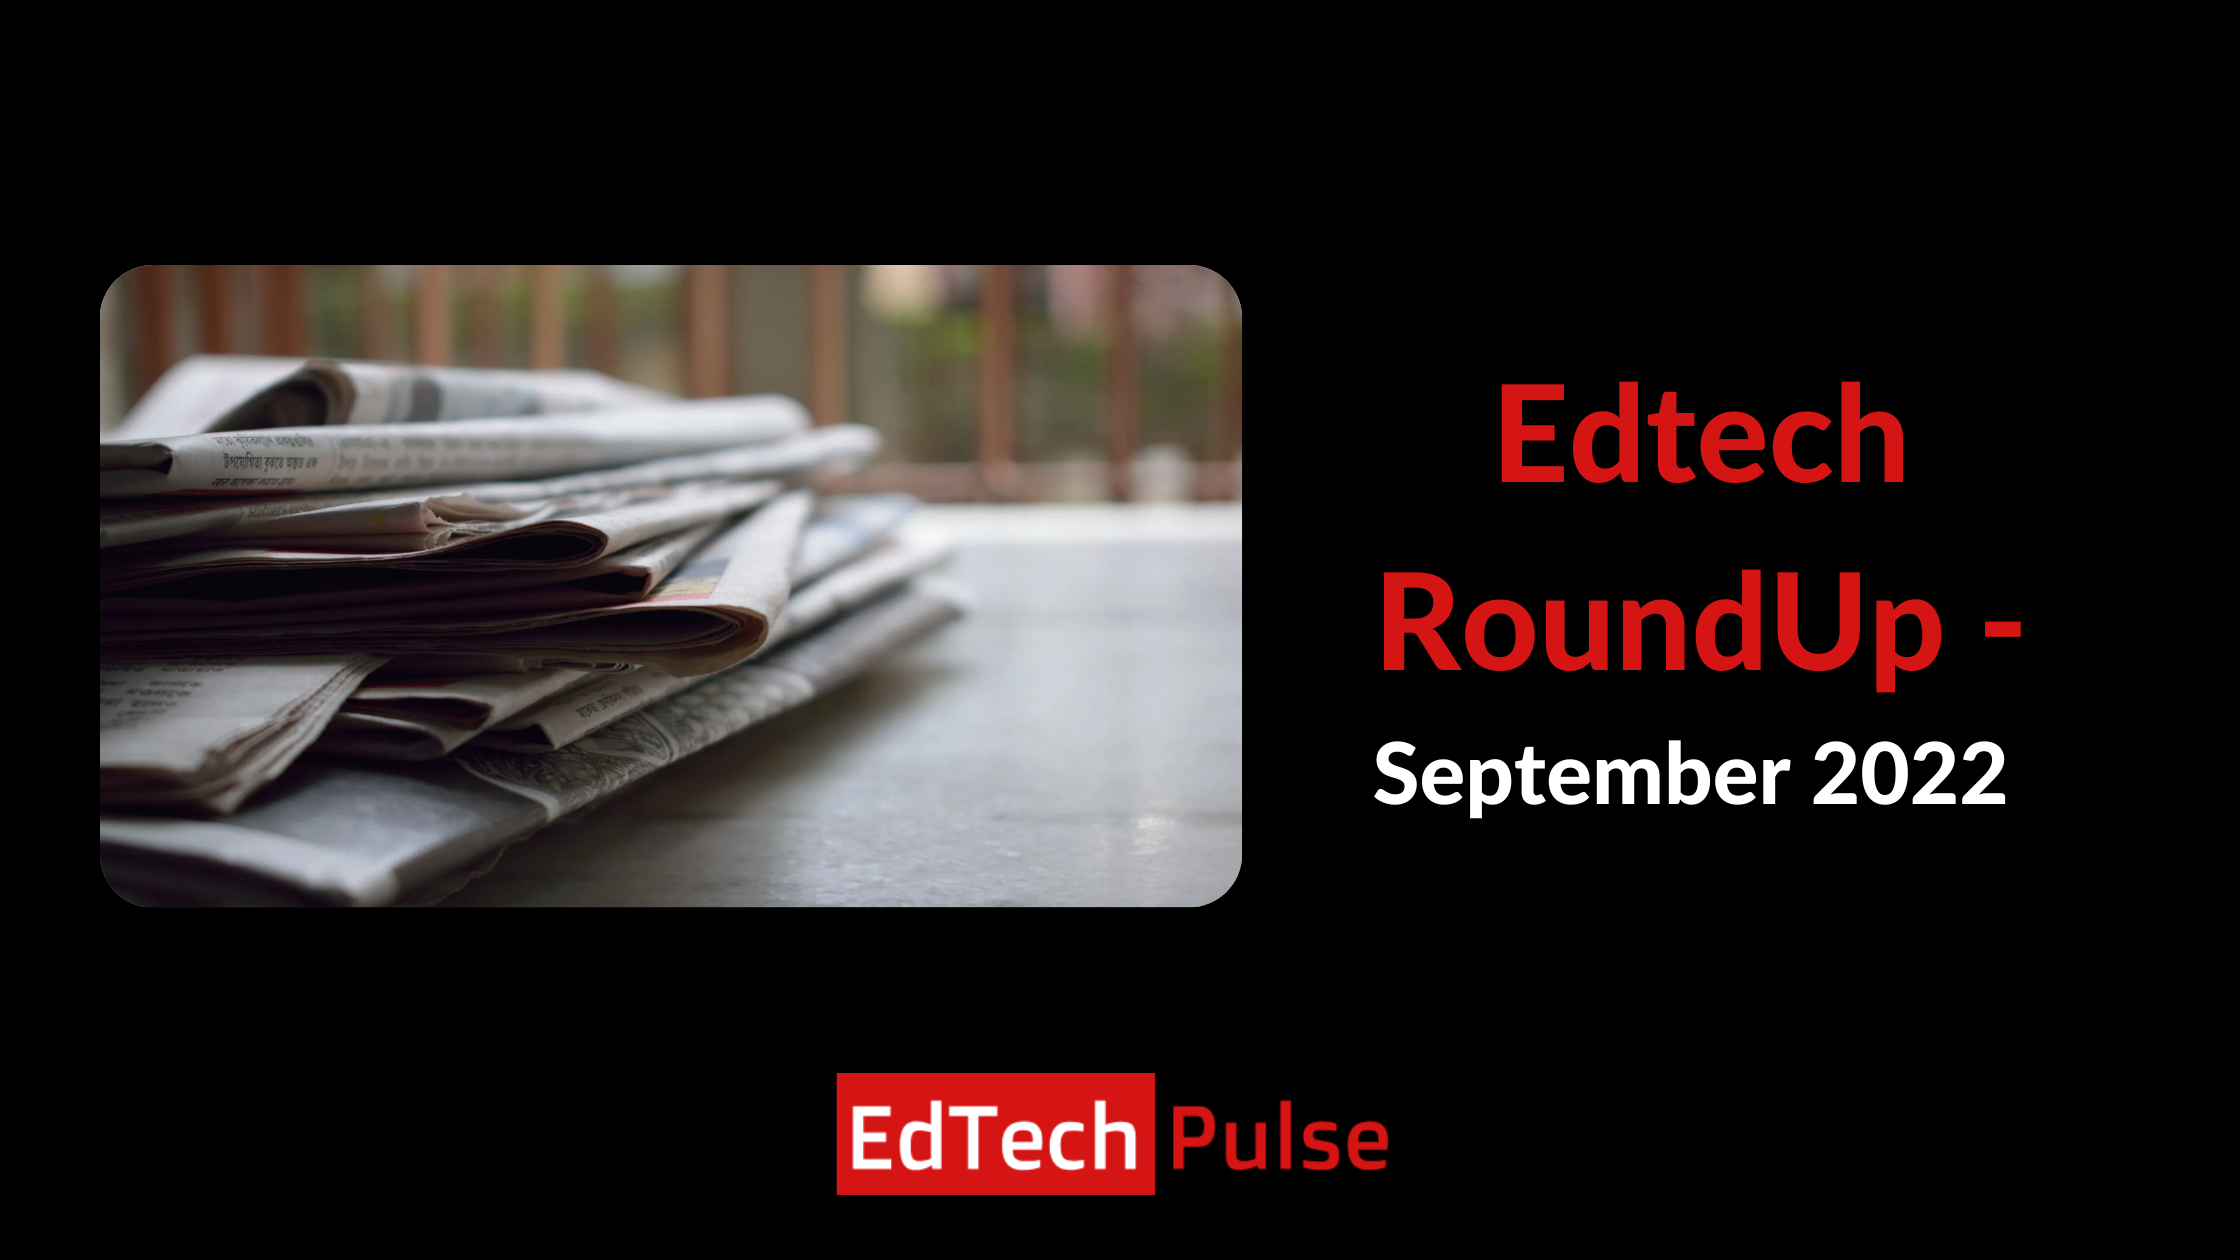 Edtech RoundUp - September 2022